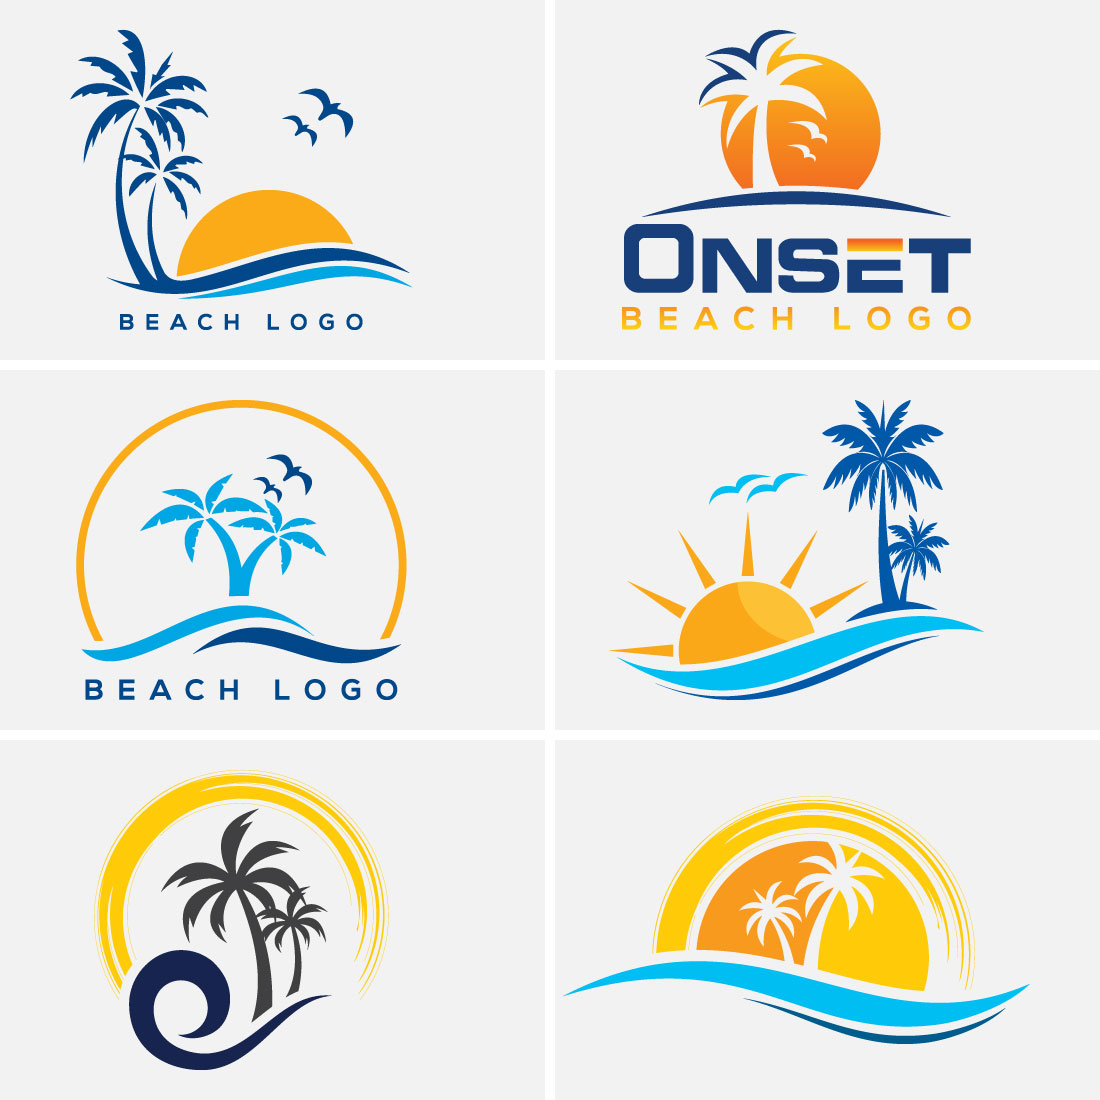 Premium Vector | Beach logo design vector template